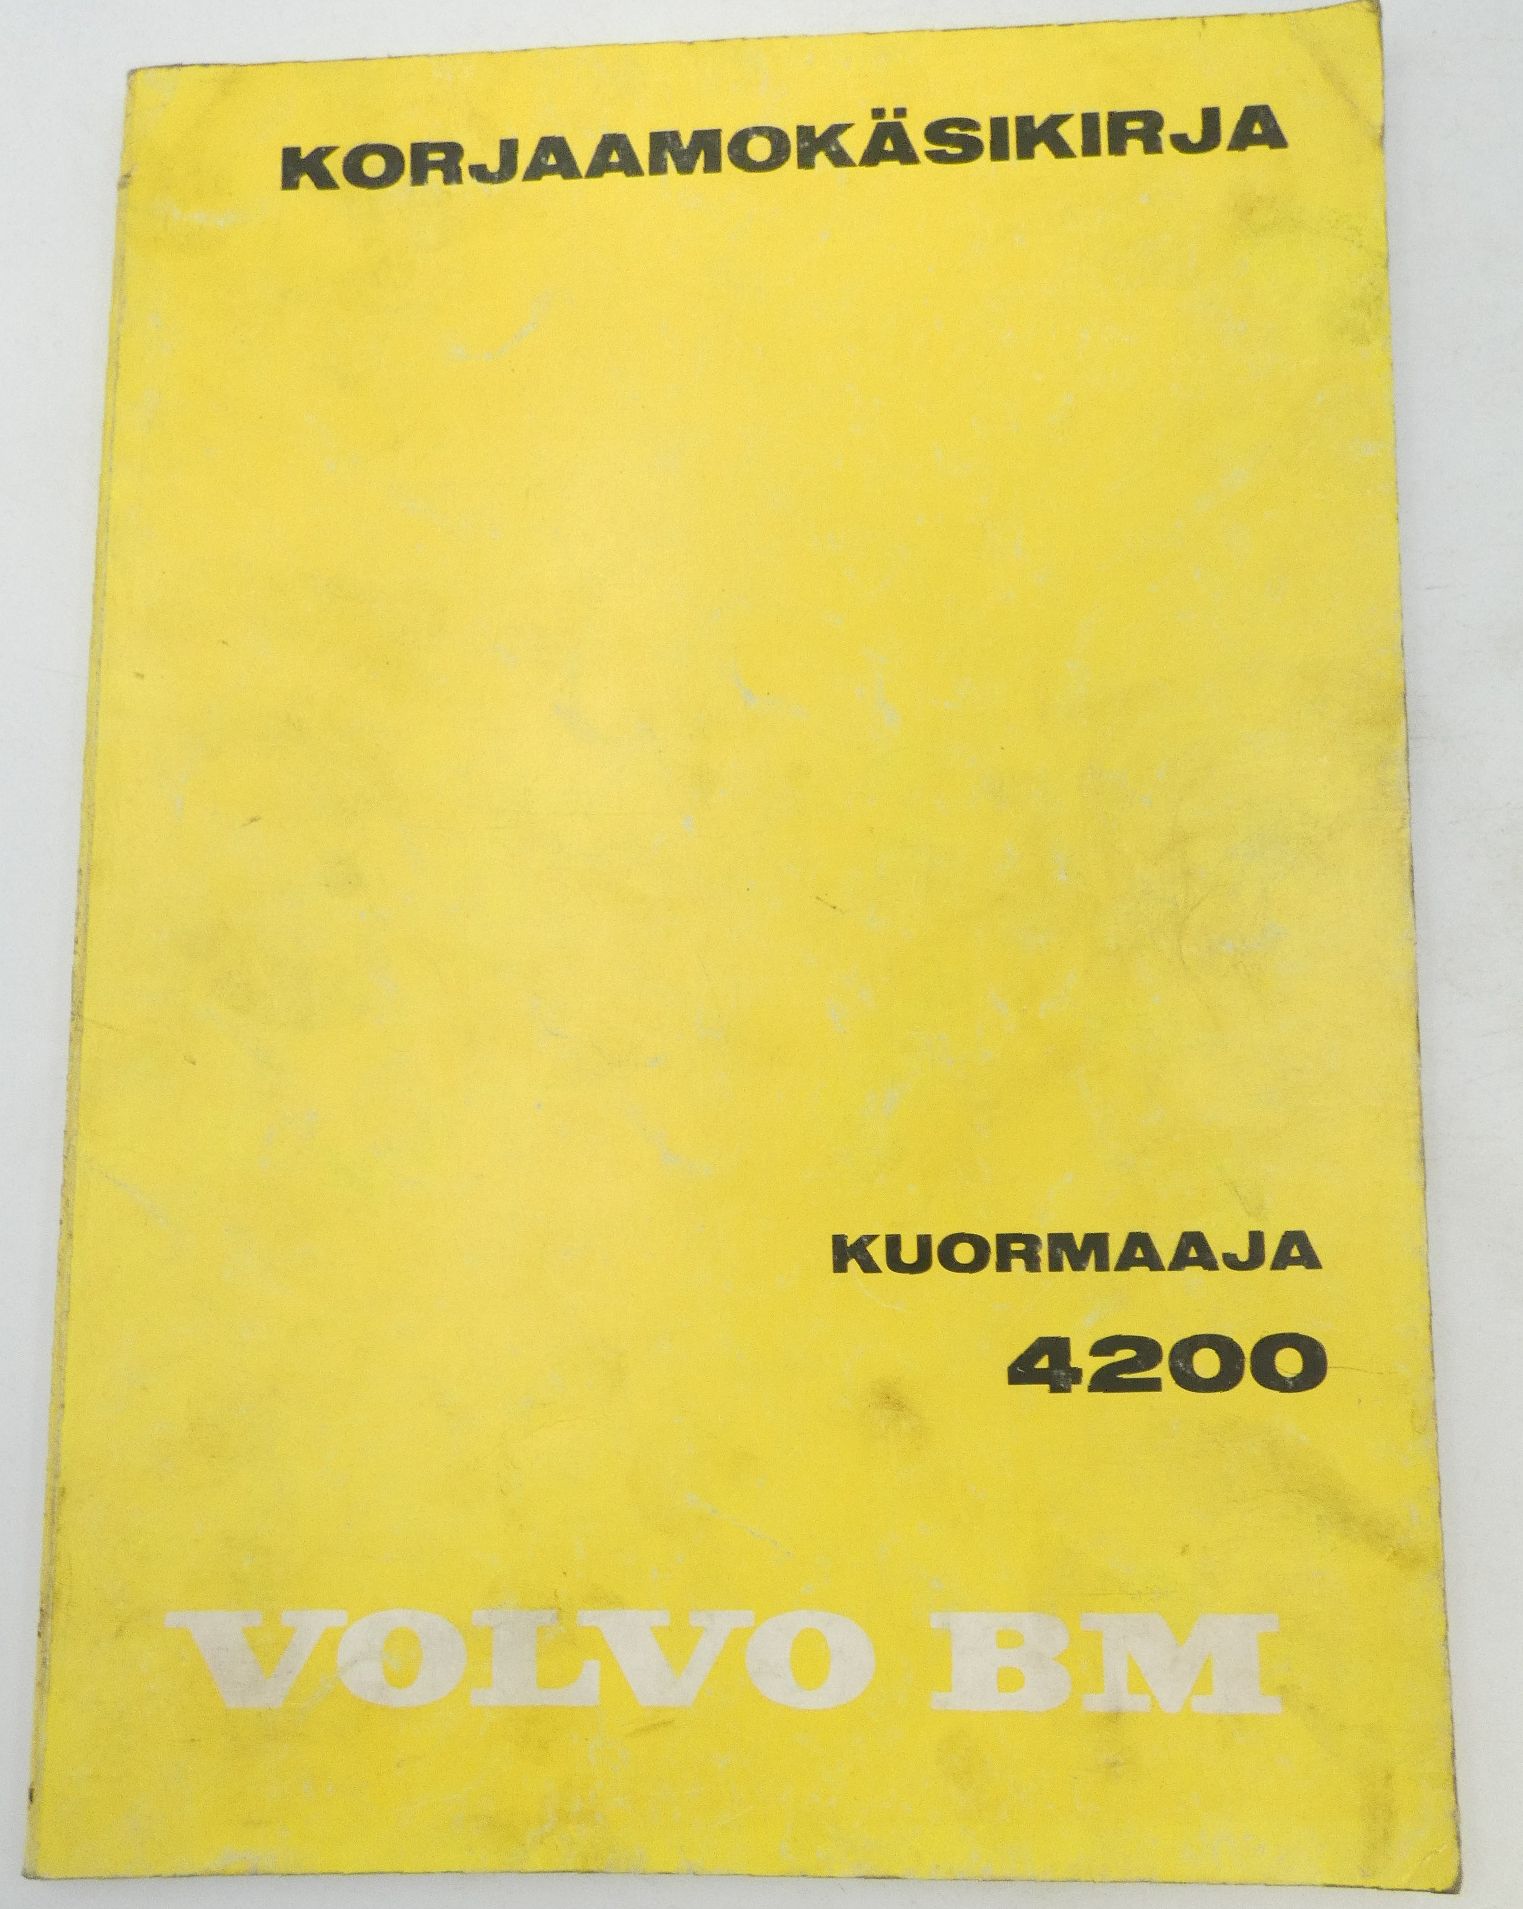 Volvo BM 4200 korjaamokäsikirja